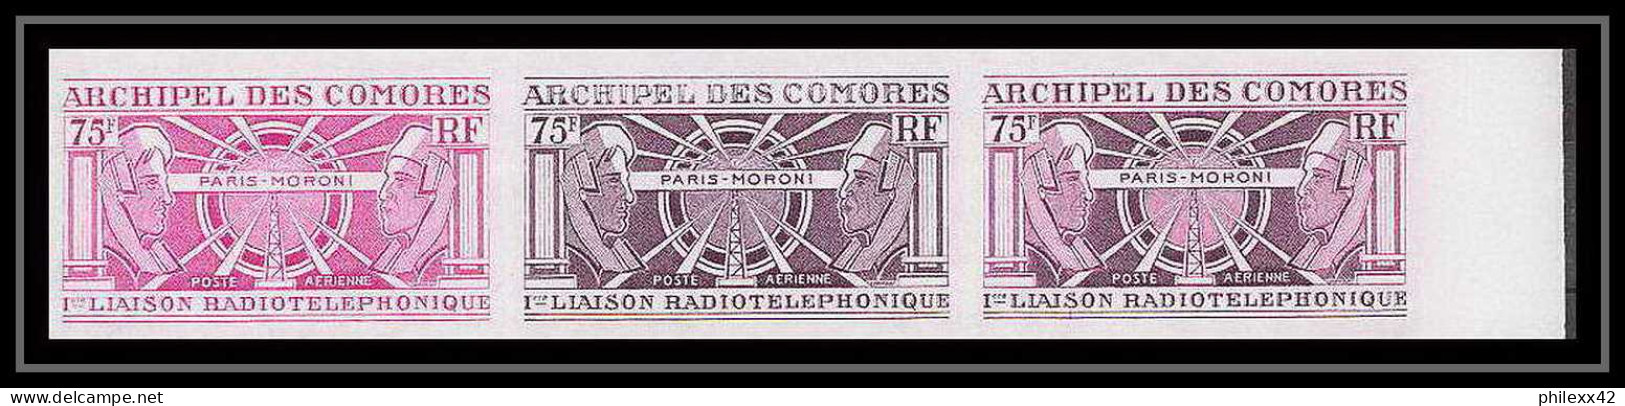 91602b Comores N° 43 1ère Liaison Radiotelephonique Moroni-Paris Bande 3 Essai Proof Non Dentelé Imperf ** MNH Telecom - Poste Aérienne